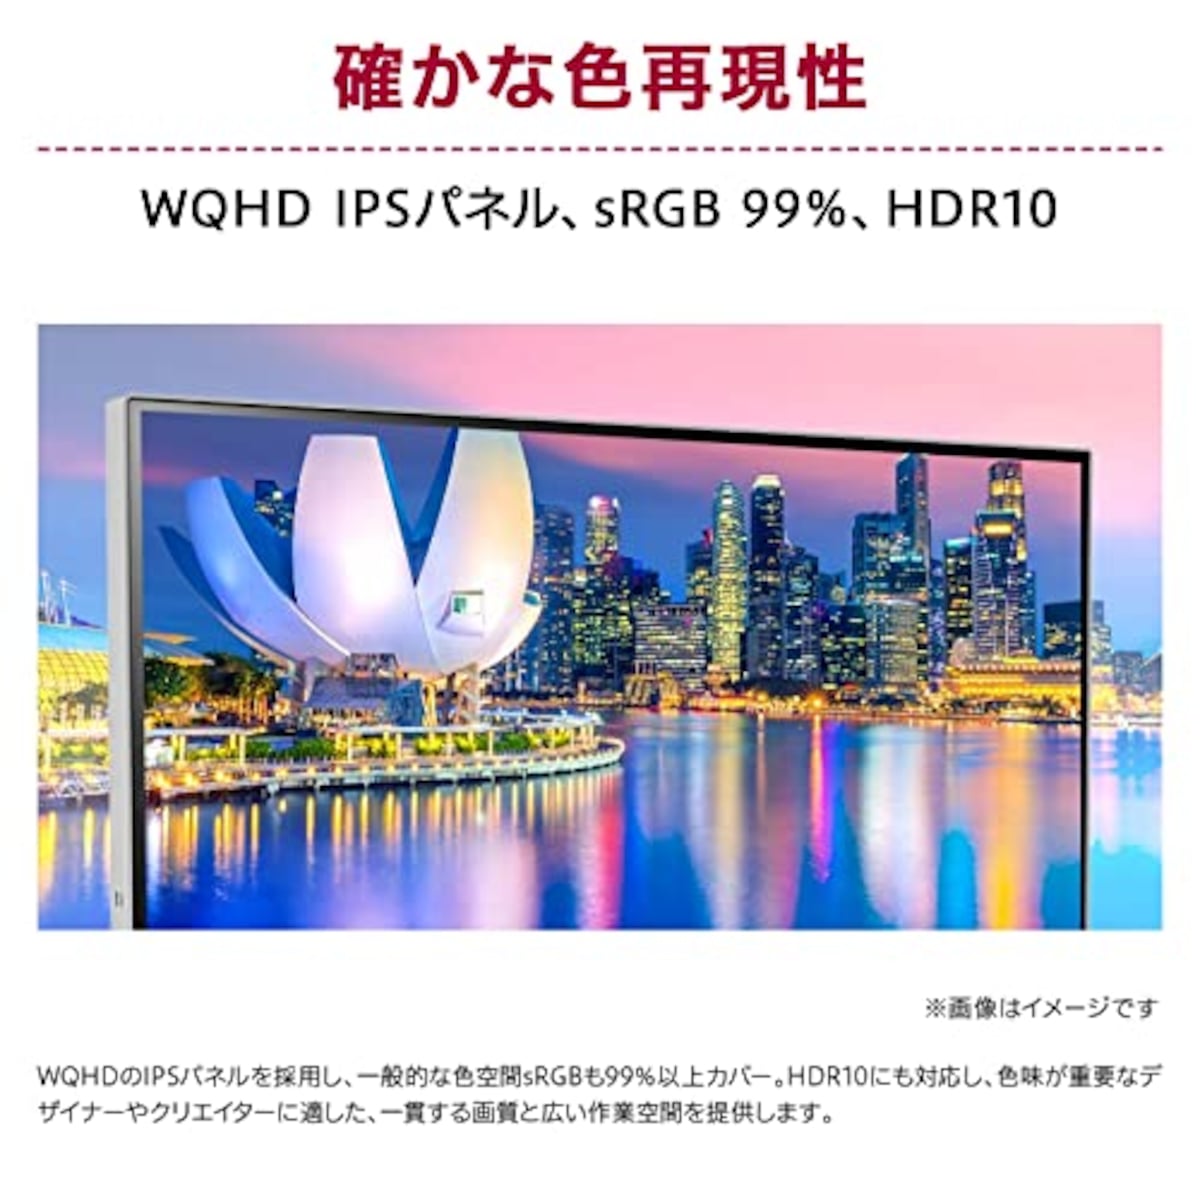  LG 2wayスタンド モニター ディスプレイ 27BQ70QC-S 27インチ/WQHD(2560×1440)/IPSアンチグレア/HDR/sRGB 99%/USB Type-C,HDMI/FreeSync/Webカメラ, スピーカー, マイク/フリッカーセーフ, ブルーライト低減機能/3年安心・無輝点保証画像2 